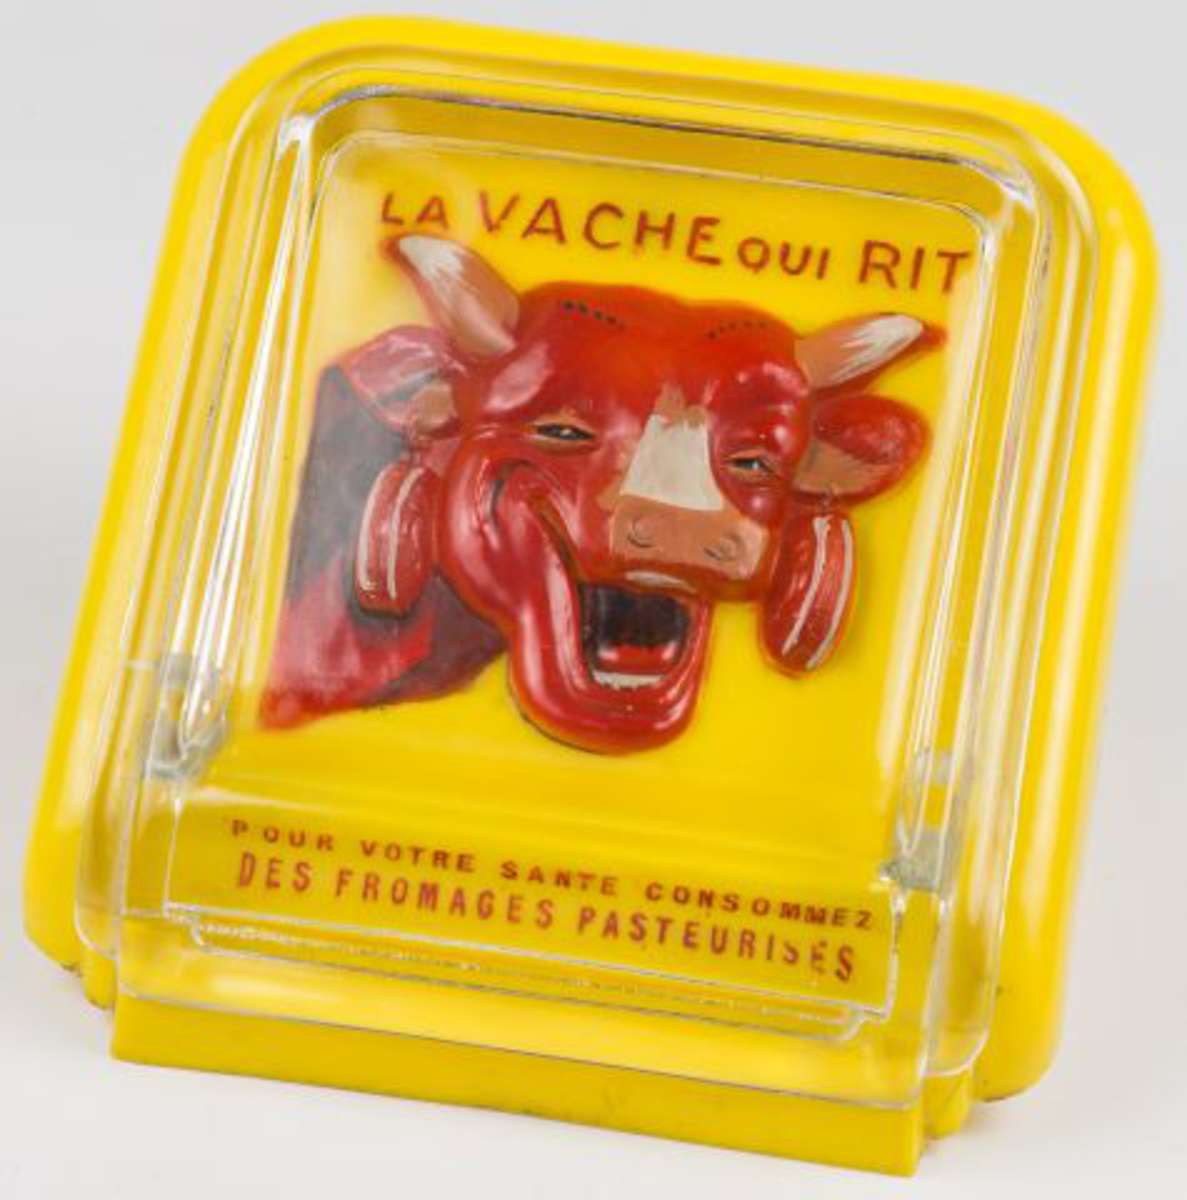 La Vache Qui Rit Plaque Maill E Publicitaire Auctions Price Archive